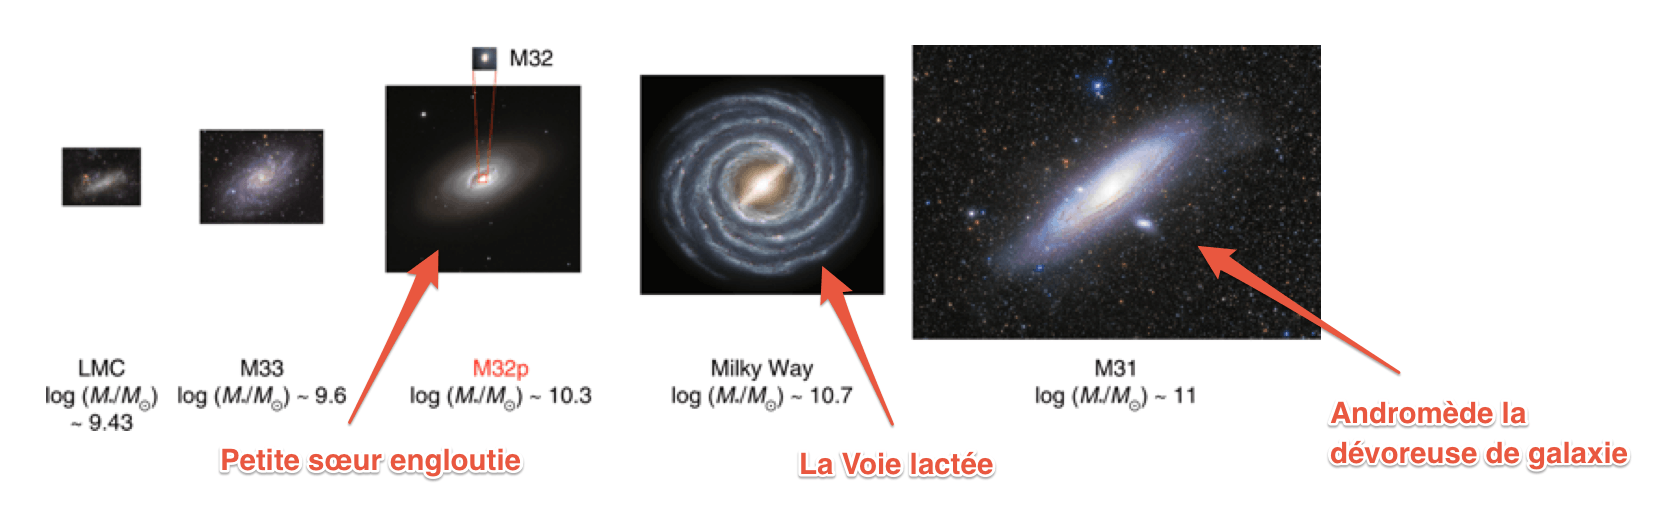 Avant d'être dévorée par sa voisine, M32p était le troisième plus grand membre du groupe de galaxies, derrière Andromède et la Voie lactée. // Source : Nature Astronomy